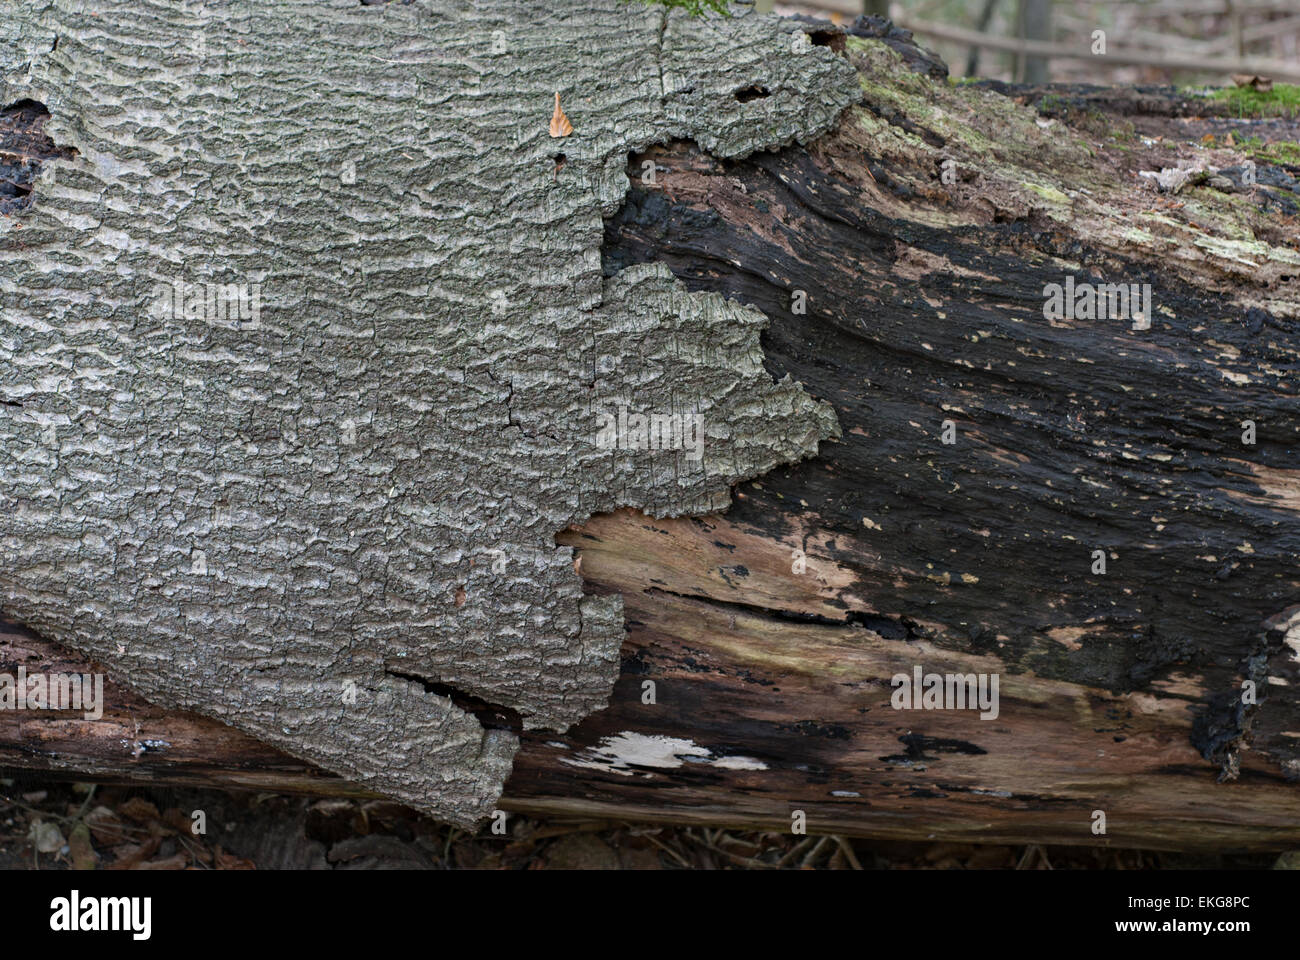 Bark on rotting tree trunk Stock Photo